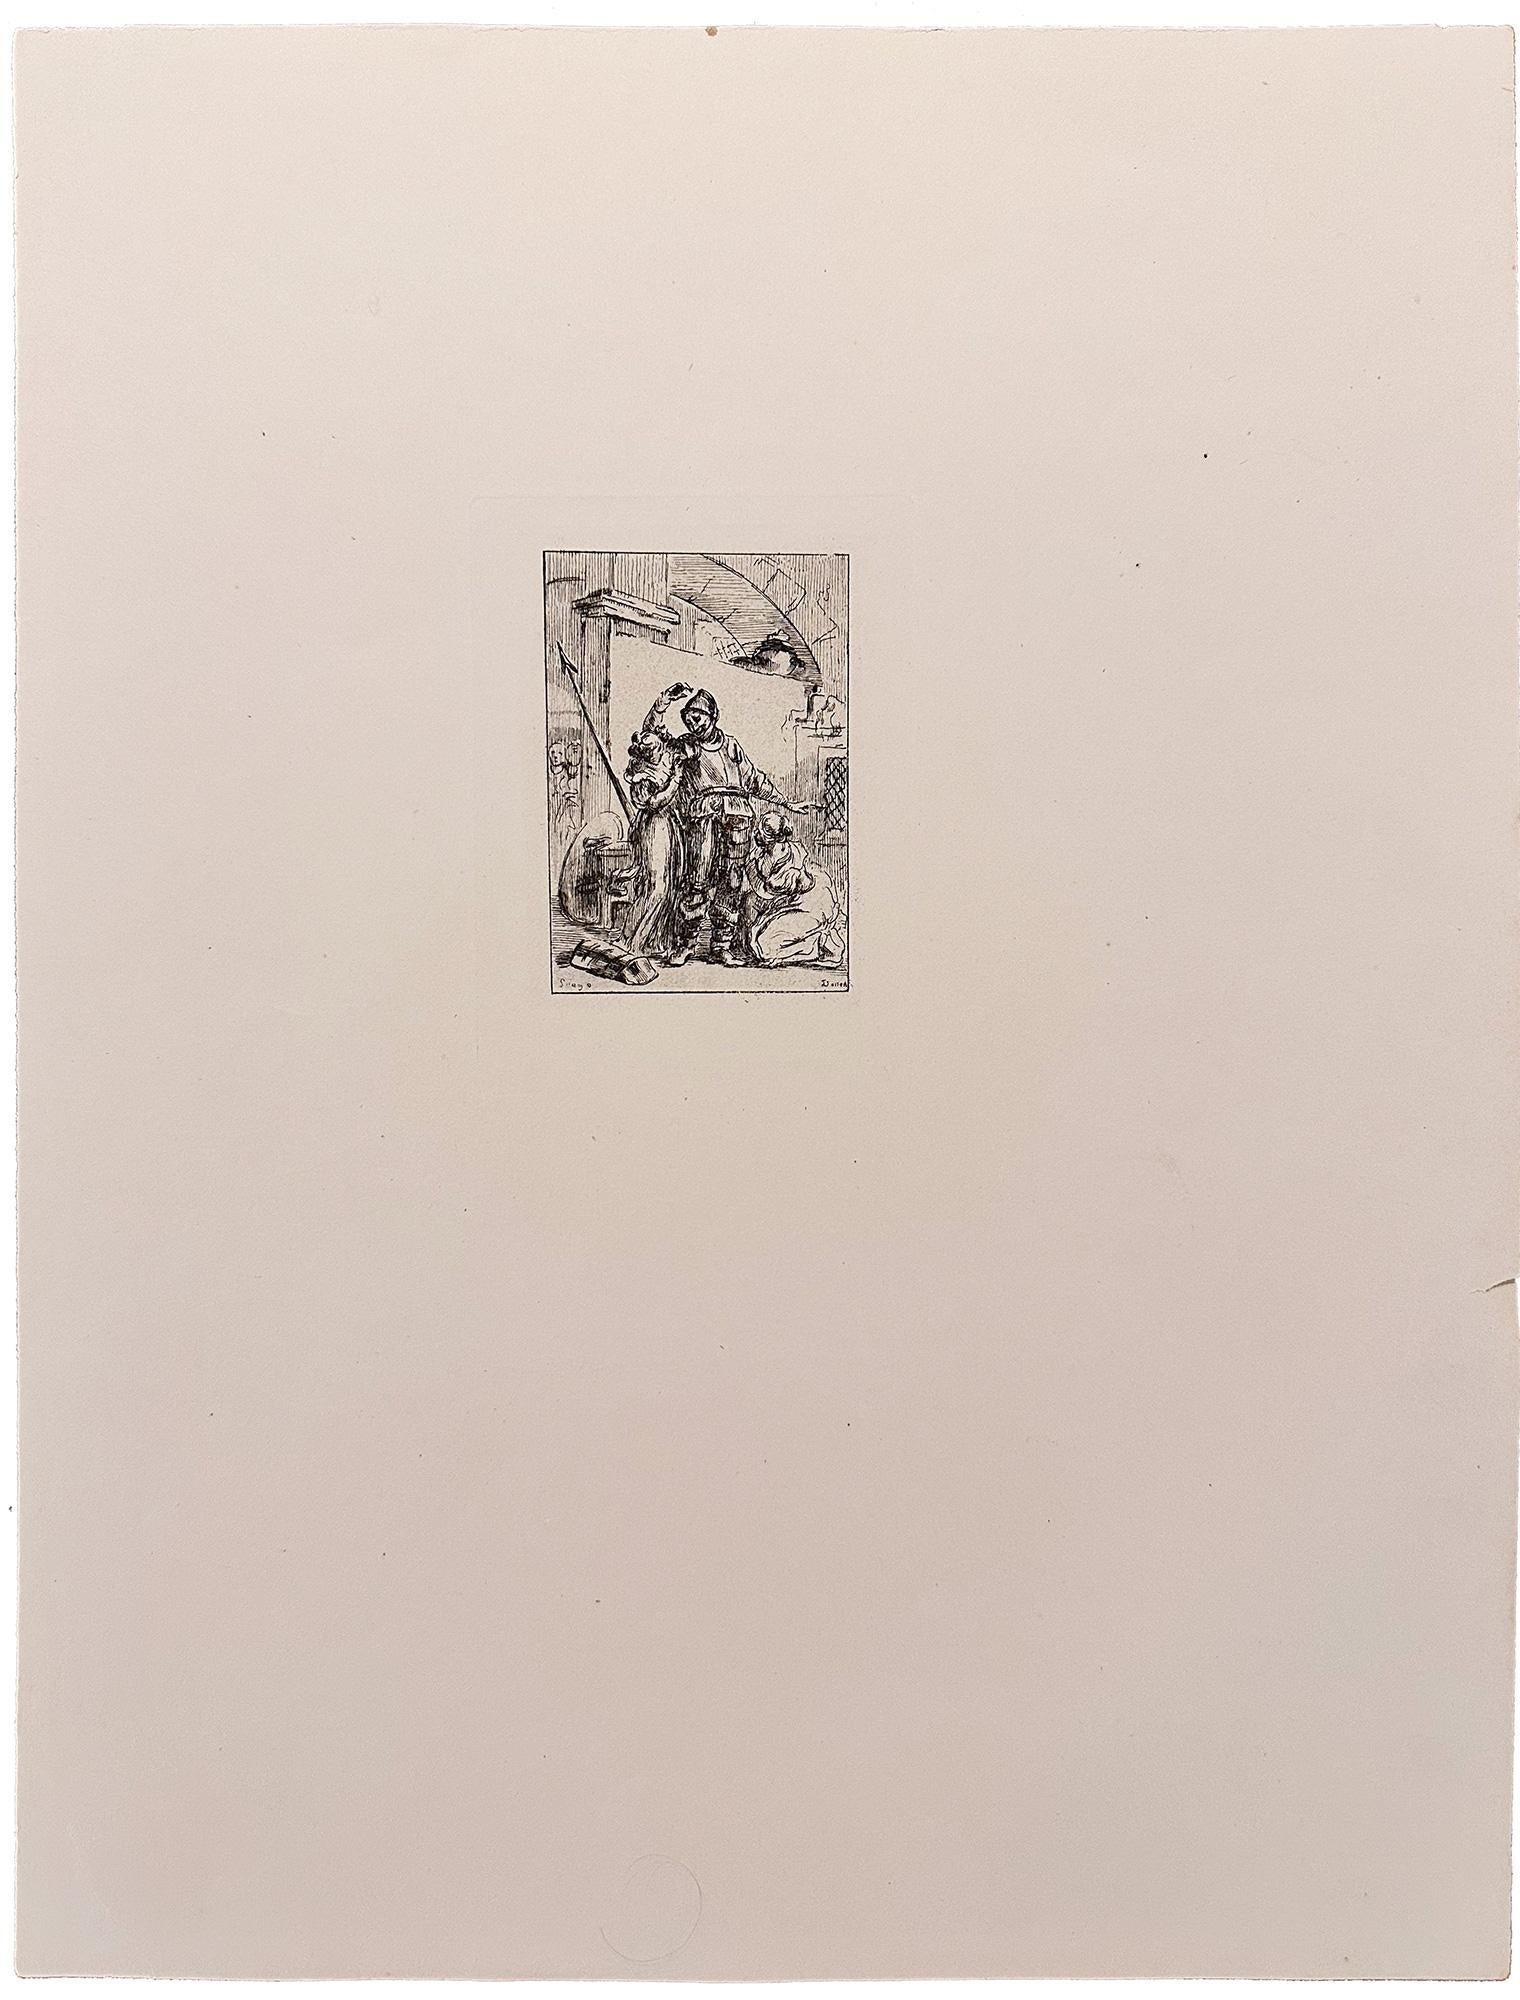 Don Quixote - Print by Jean-Honoré Fragonard